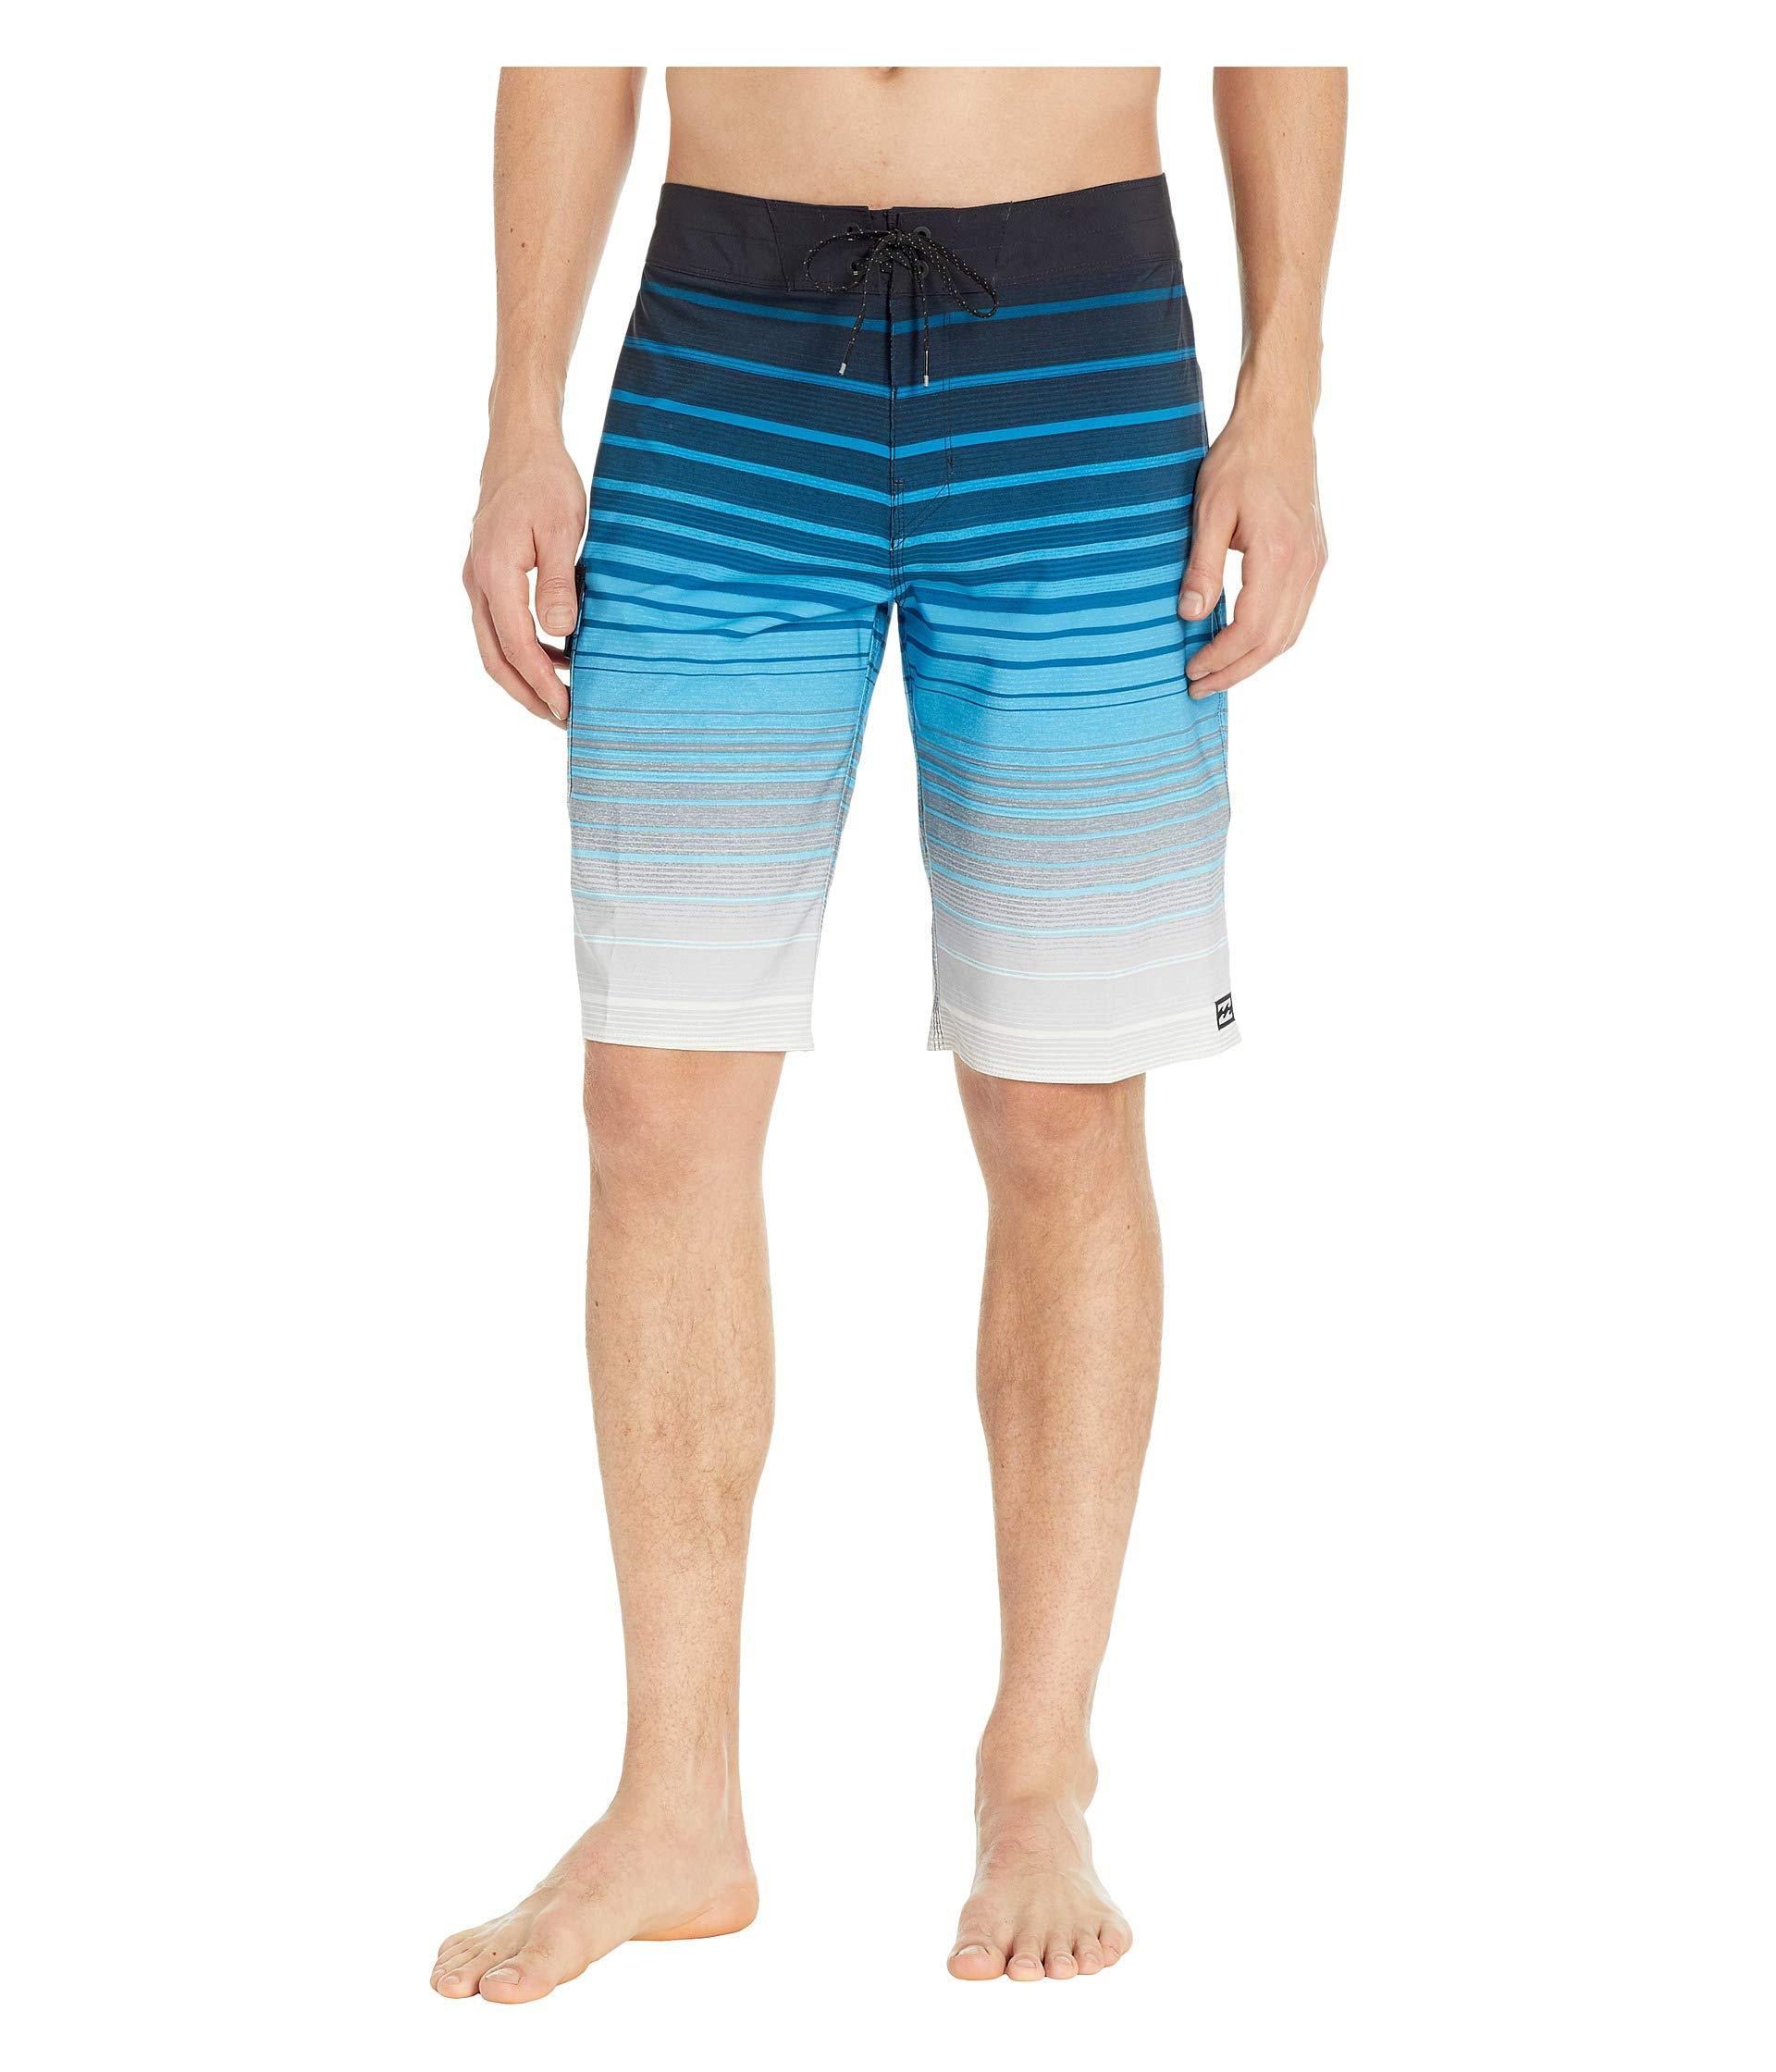 Lyst - Billabong All Day Stripe Pro (black) Men's Swimwear in Blue for Men